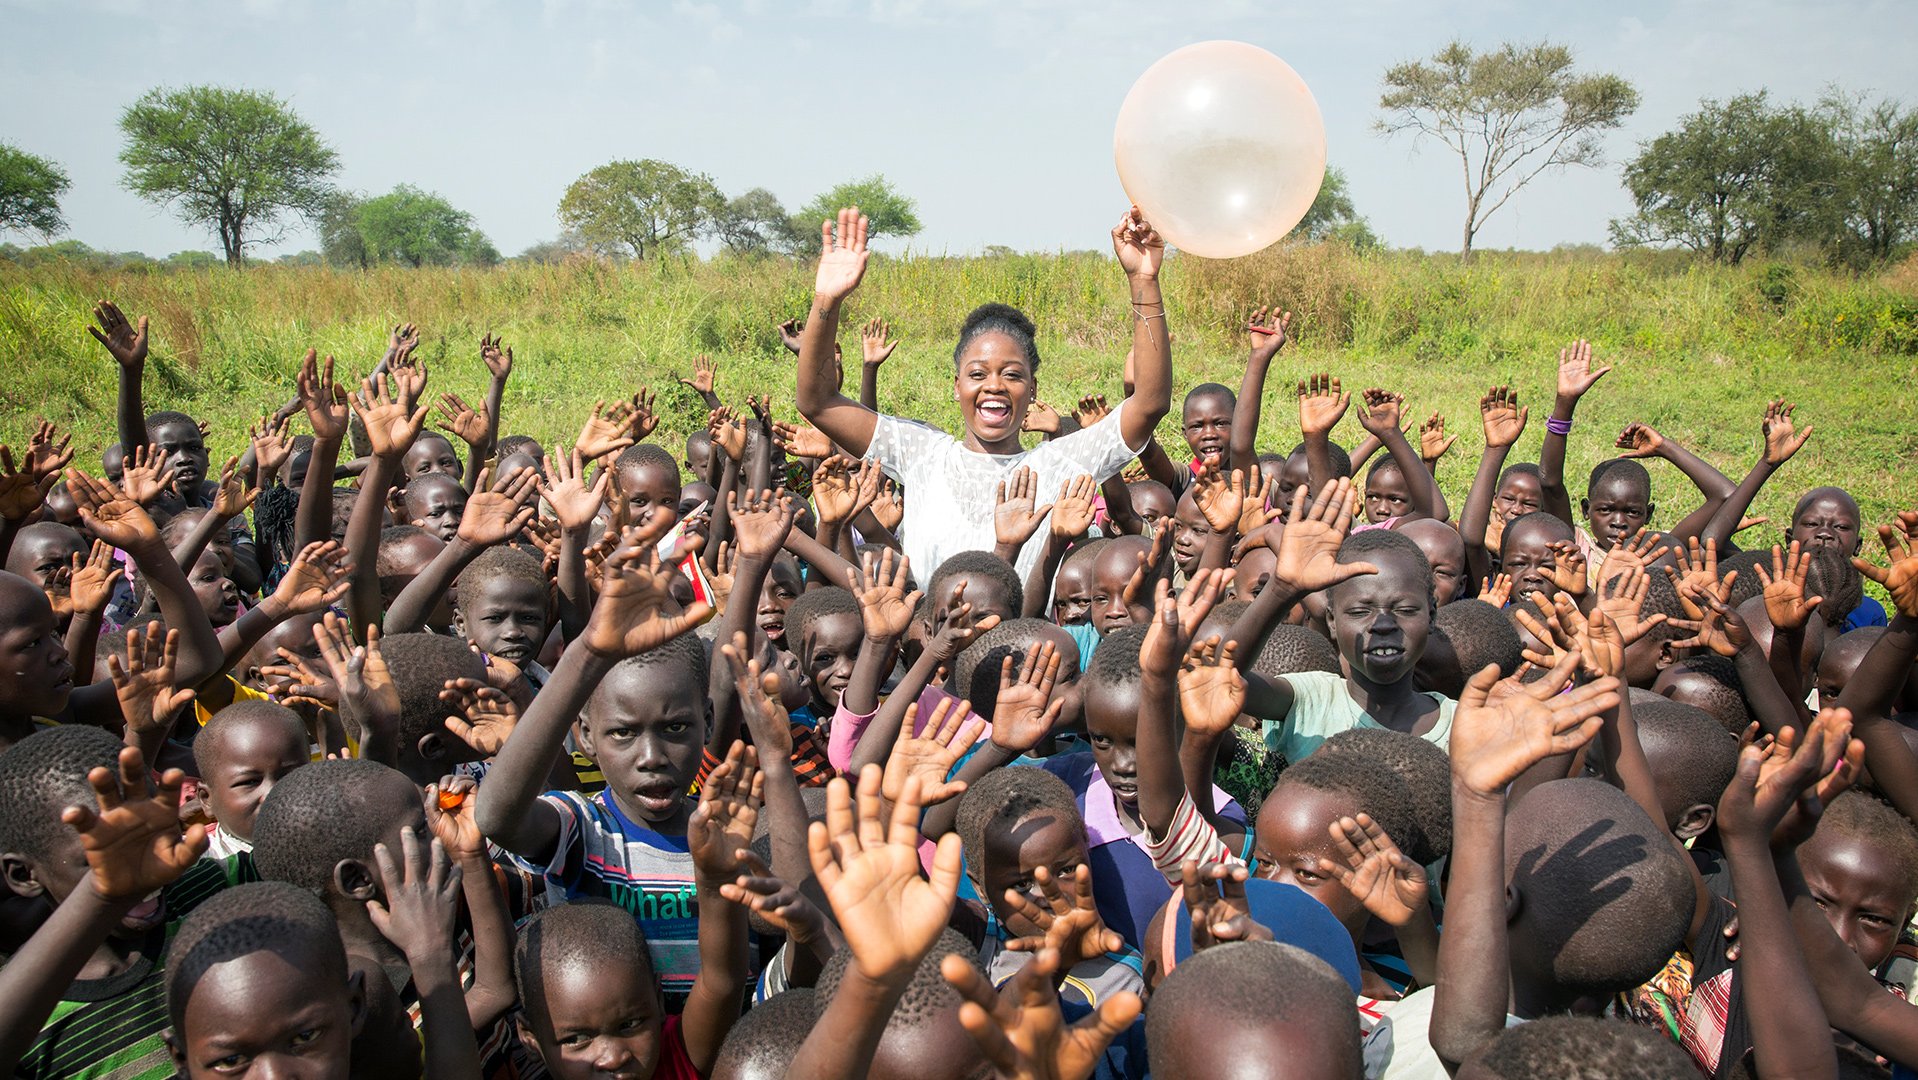 Michaela DePrince ambassadeur voor War Child - in Oeganda